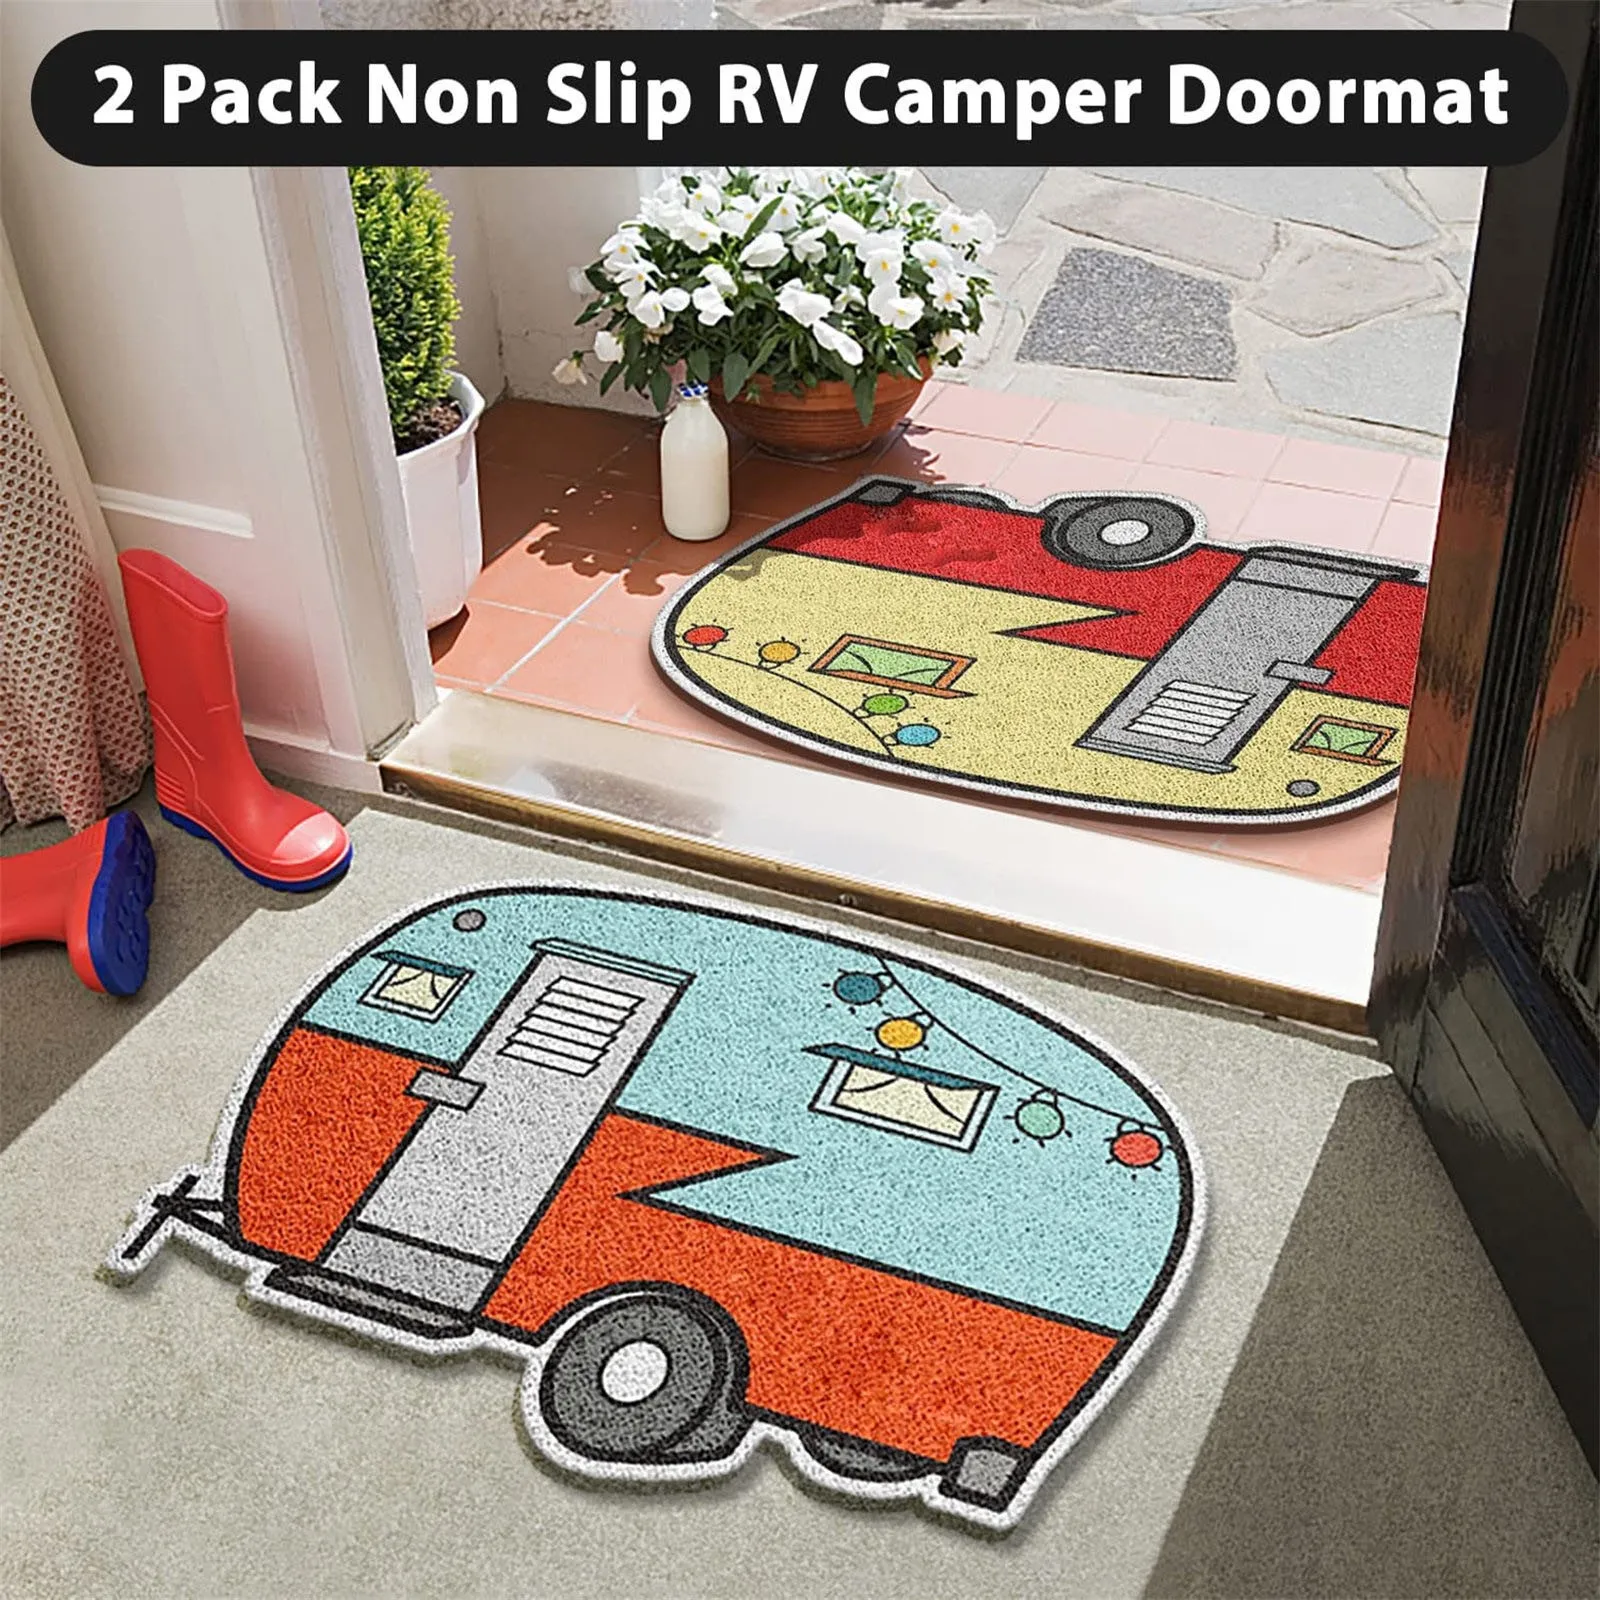 https://ae01.alicdn.com/kf/S2b70f695b8fa4068bf3a274ebb0fc7ddV/Cartoon-Camper-Door-Mat-Carpet-Indoor-Entrance-Doormat-Non-Slip-Camping-Floor-Rugs-Absorbent-Kitchen-Rug.jpg